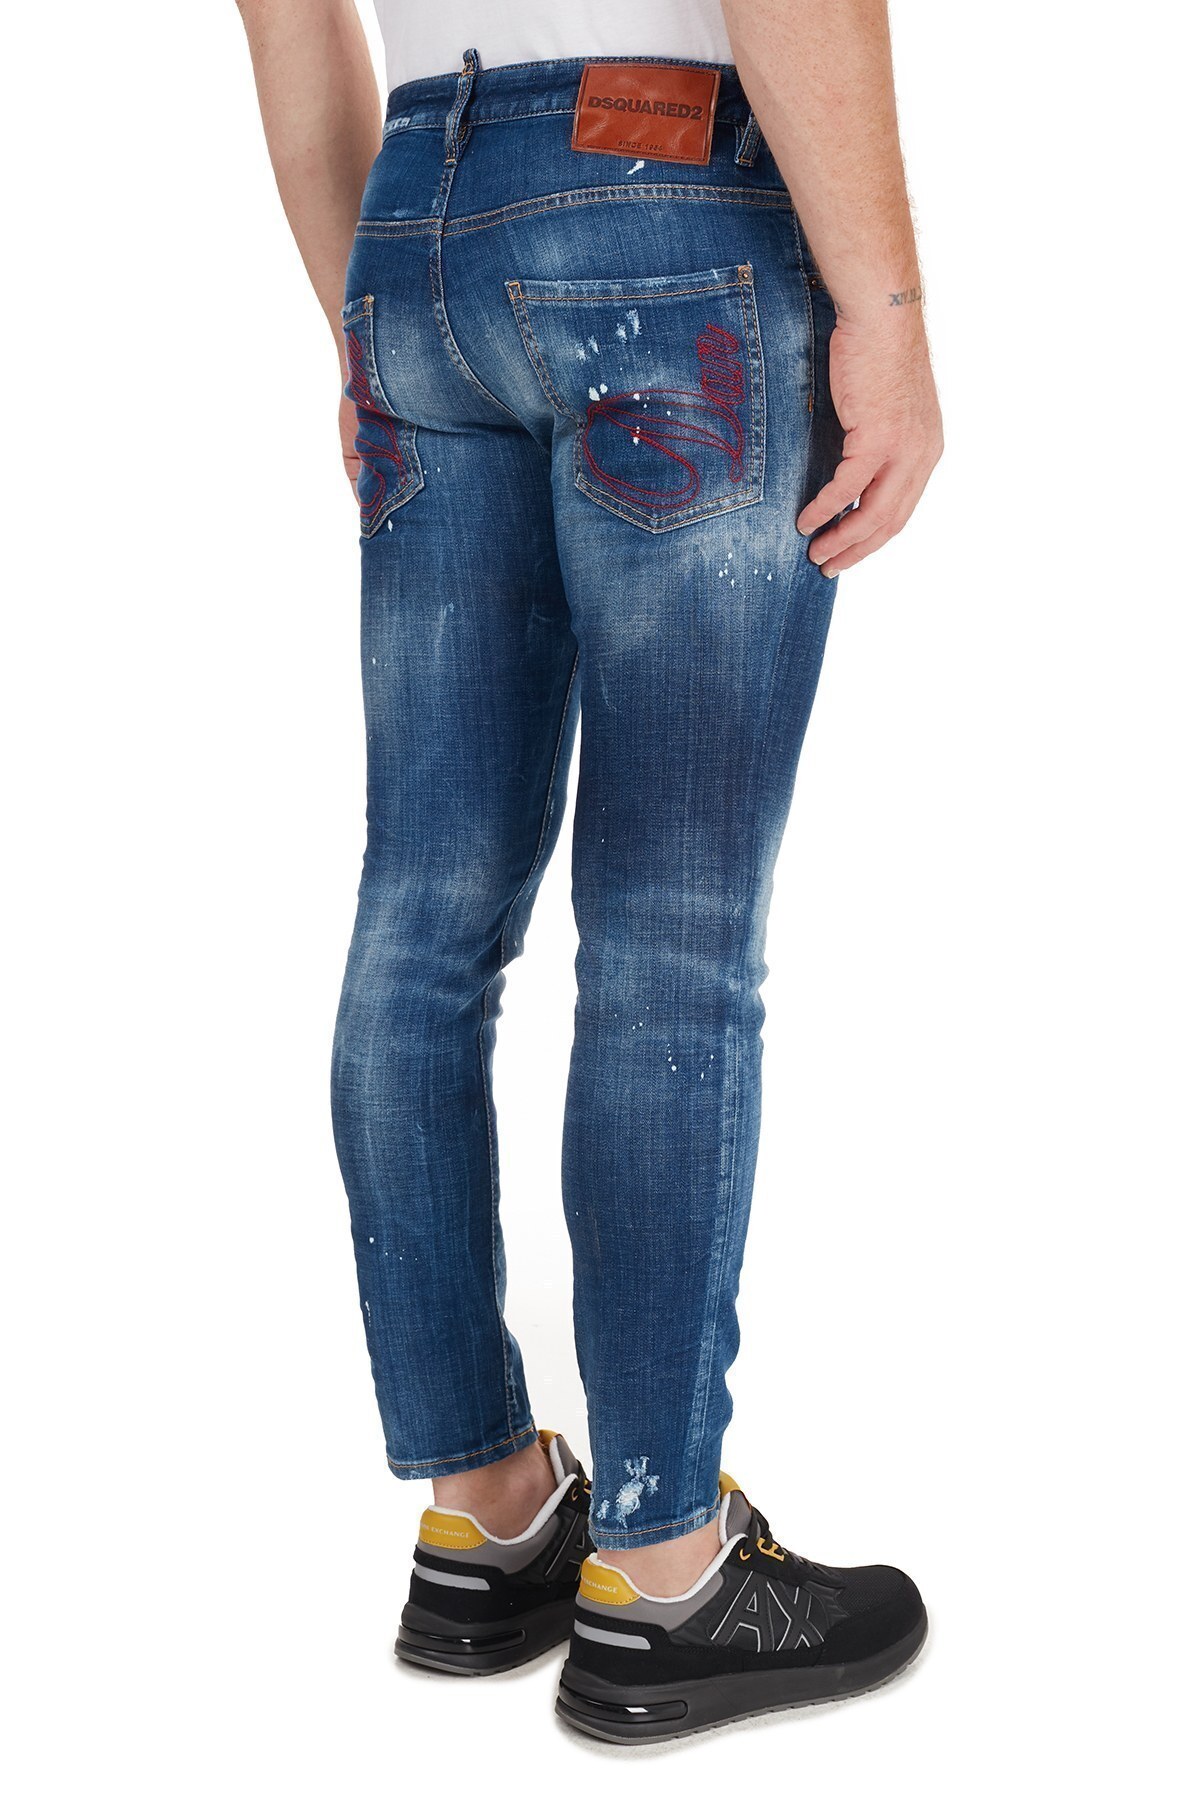 Dsquared2 Jeans Erkek Kot Pantolon S71LB0774 S30342 470 MAVİ